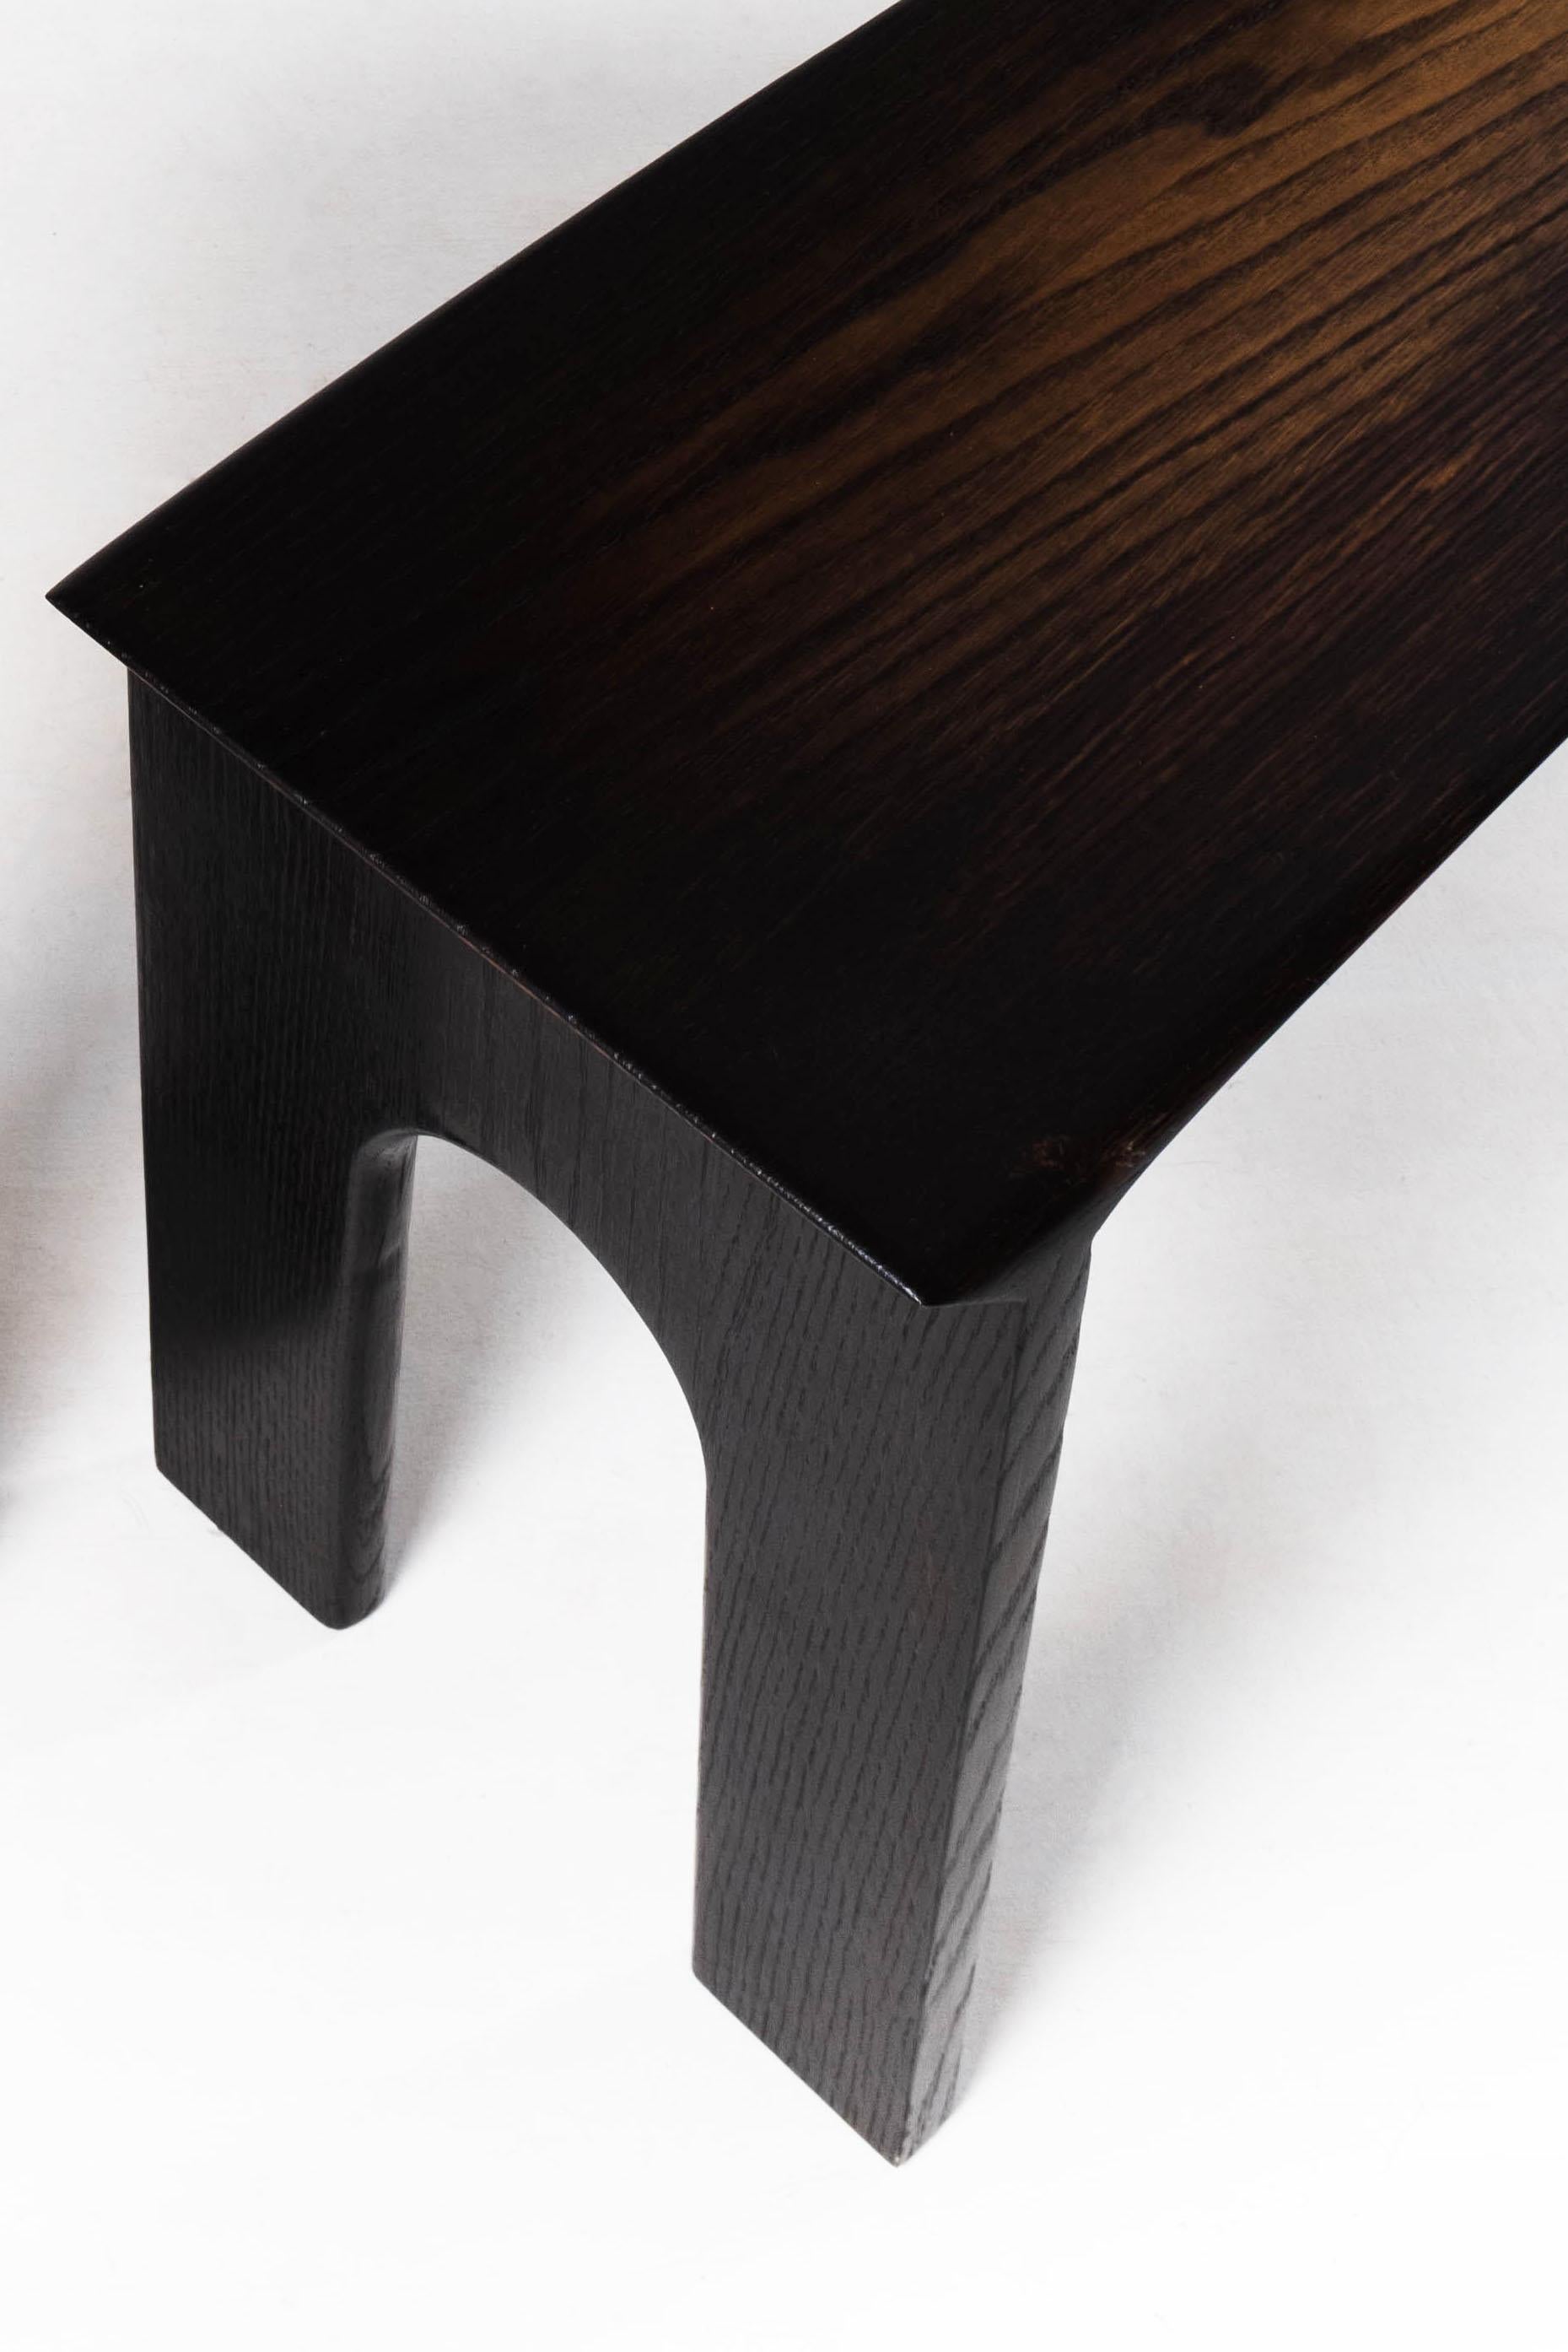 Modern Solid Oak Sculptural Bench by Lukas Cober